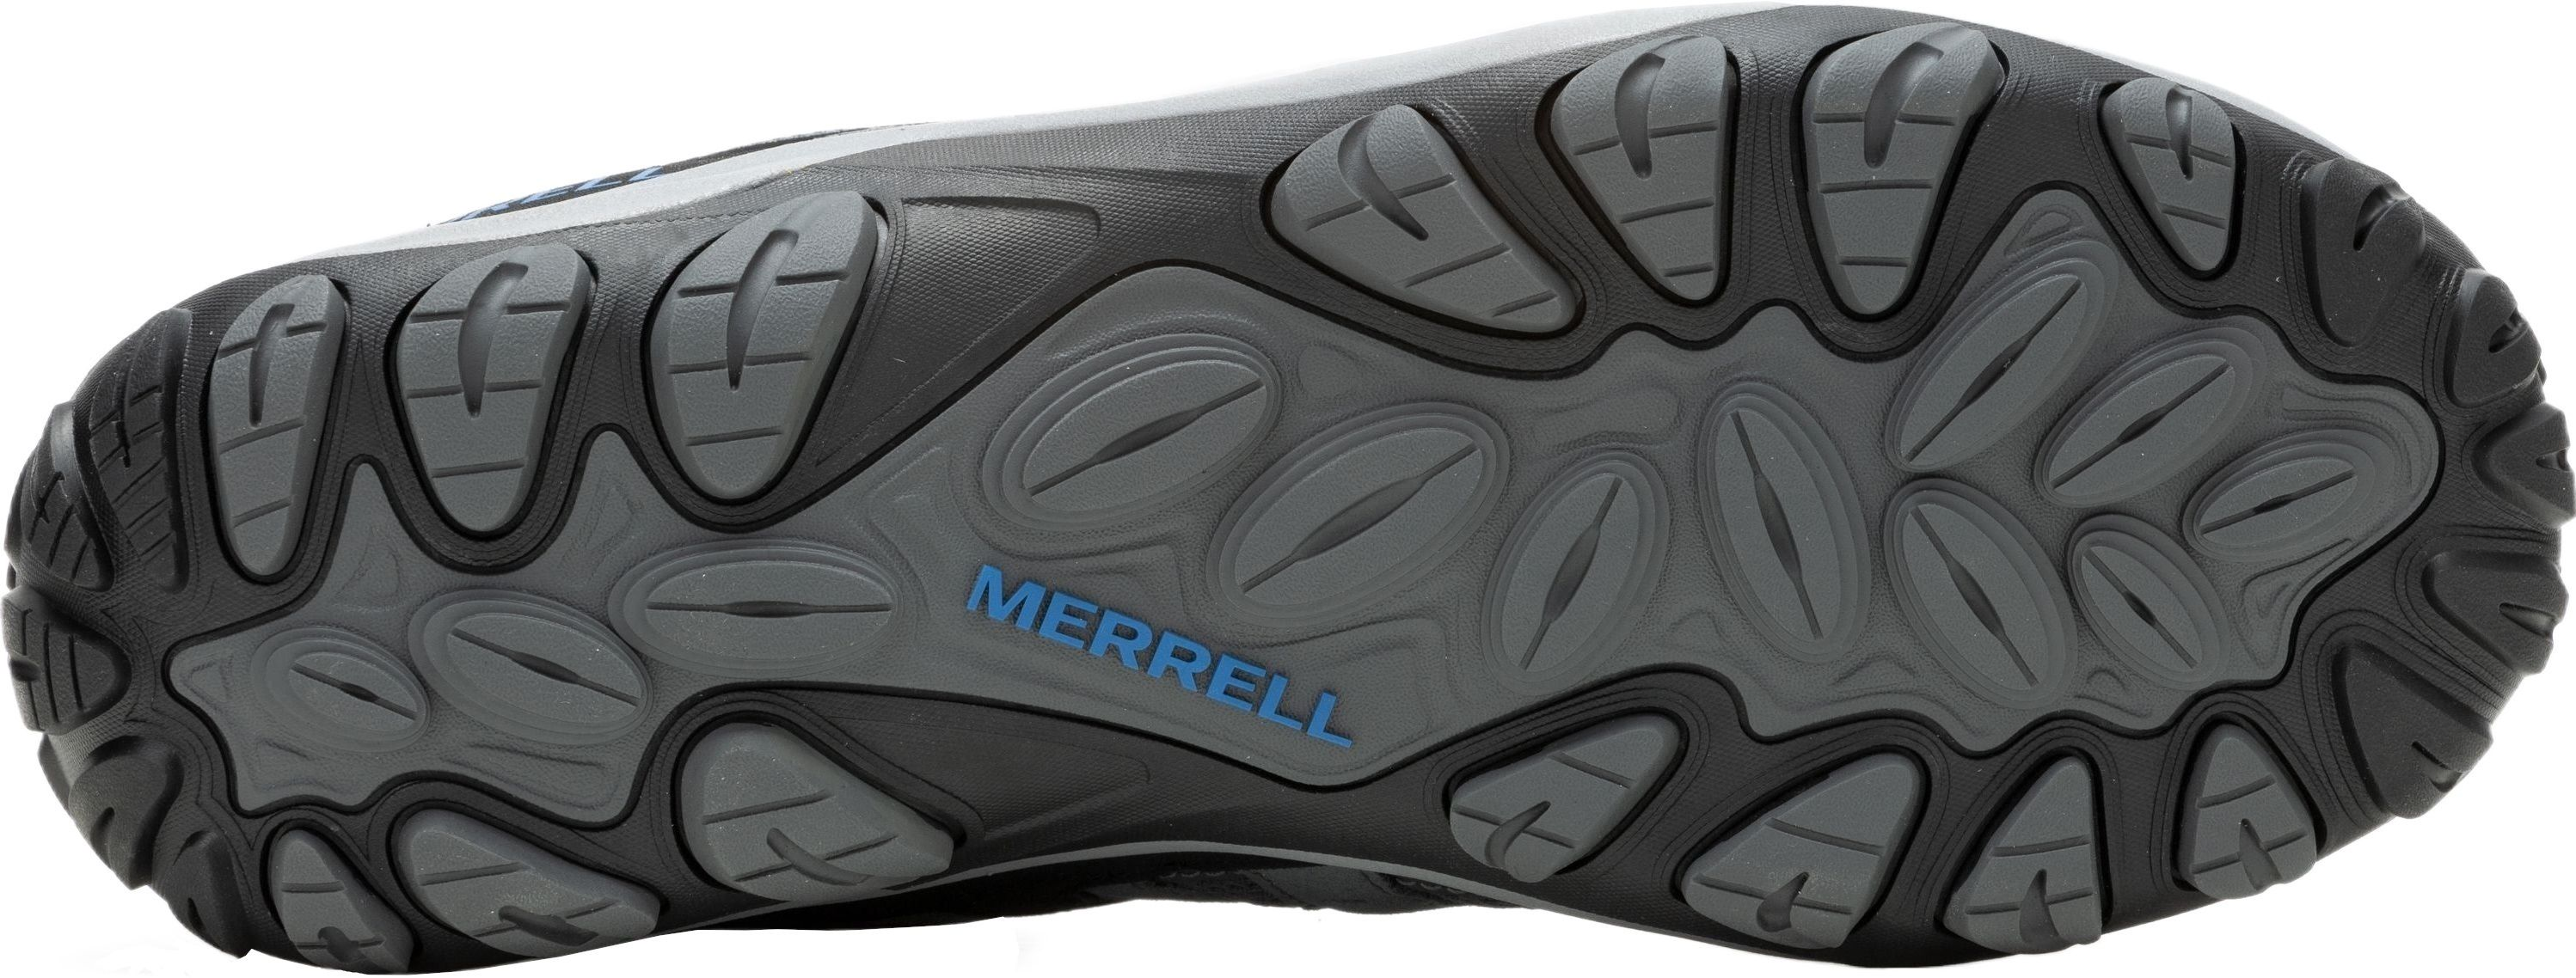 Кроссовки мужские Merrell Accentor 3 Rock/Blue 47 серый/синий фото 6